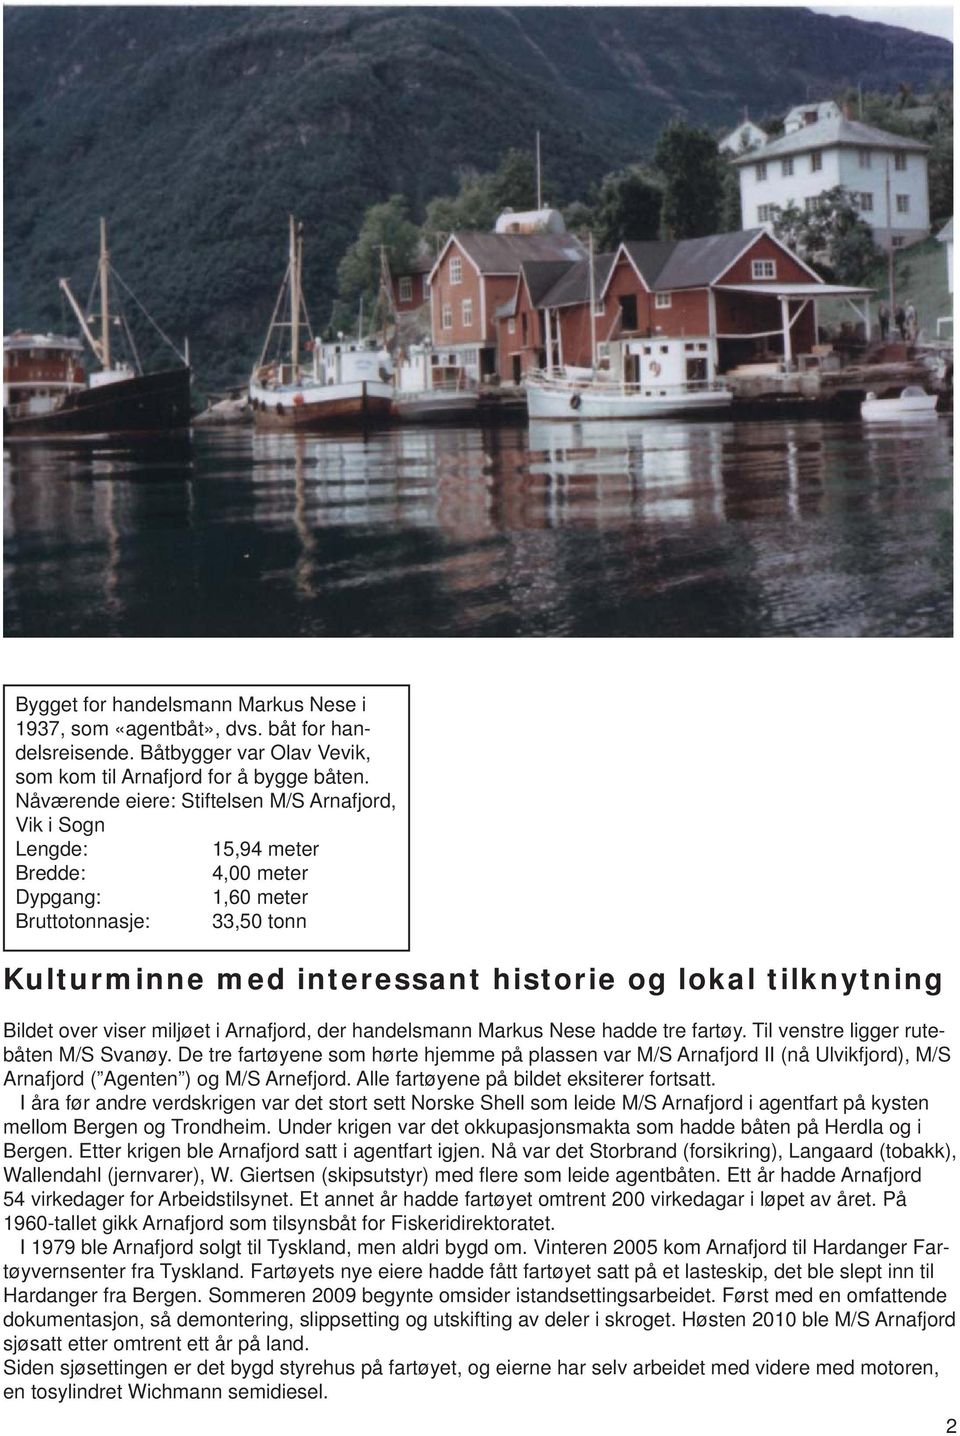 Bildet over viser miljøet i Arnafjord, der handelsmann Markus Nese hadde tre fartøy. Til venstre ligger rutebåten M/S Svanøy.